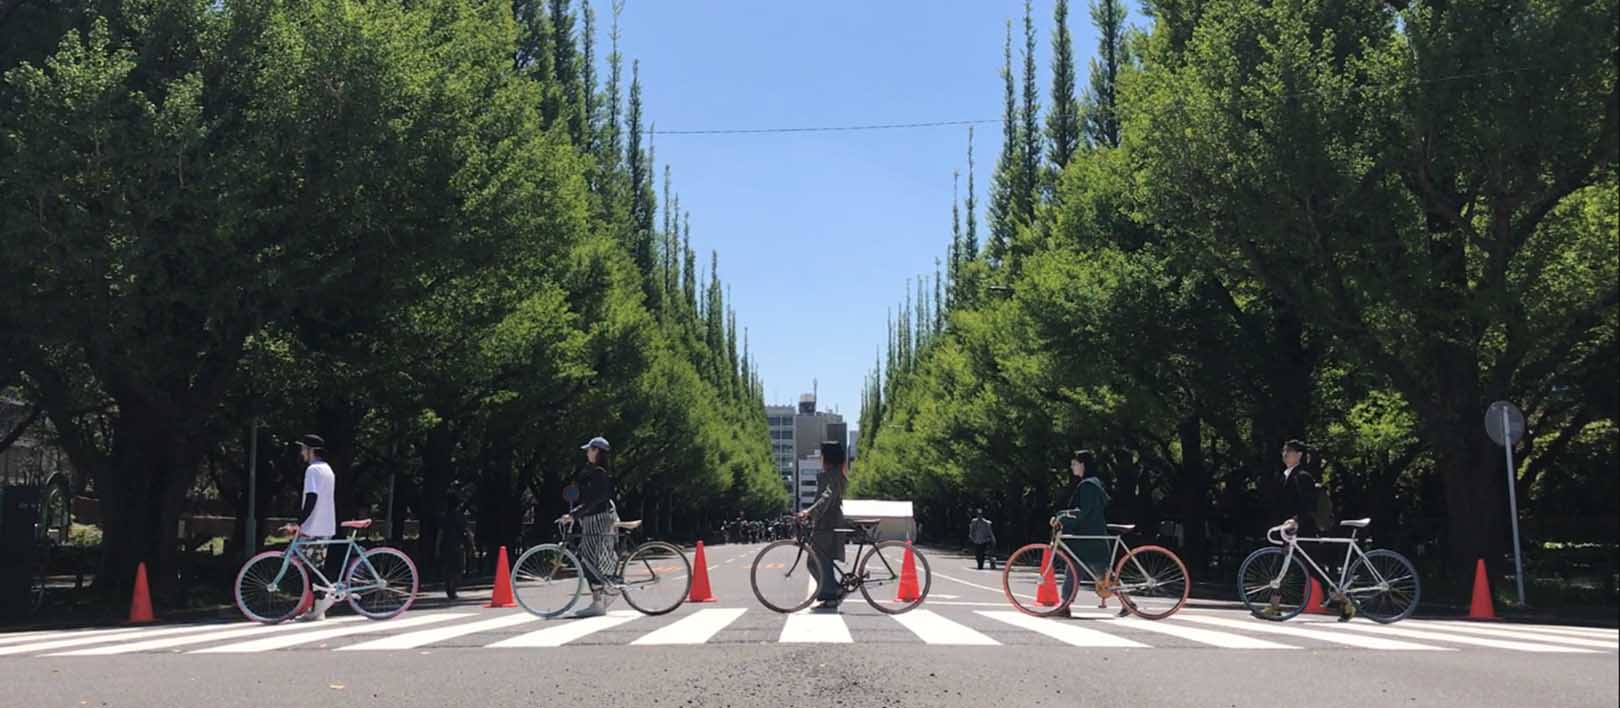 東京都神宮外苑でおしゃれ自転車Cocci Pedale(コッチペダーレ)の試乗会を開催